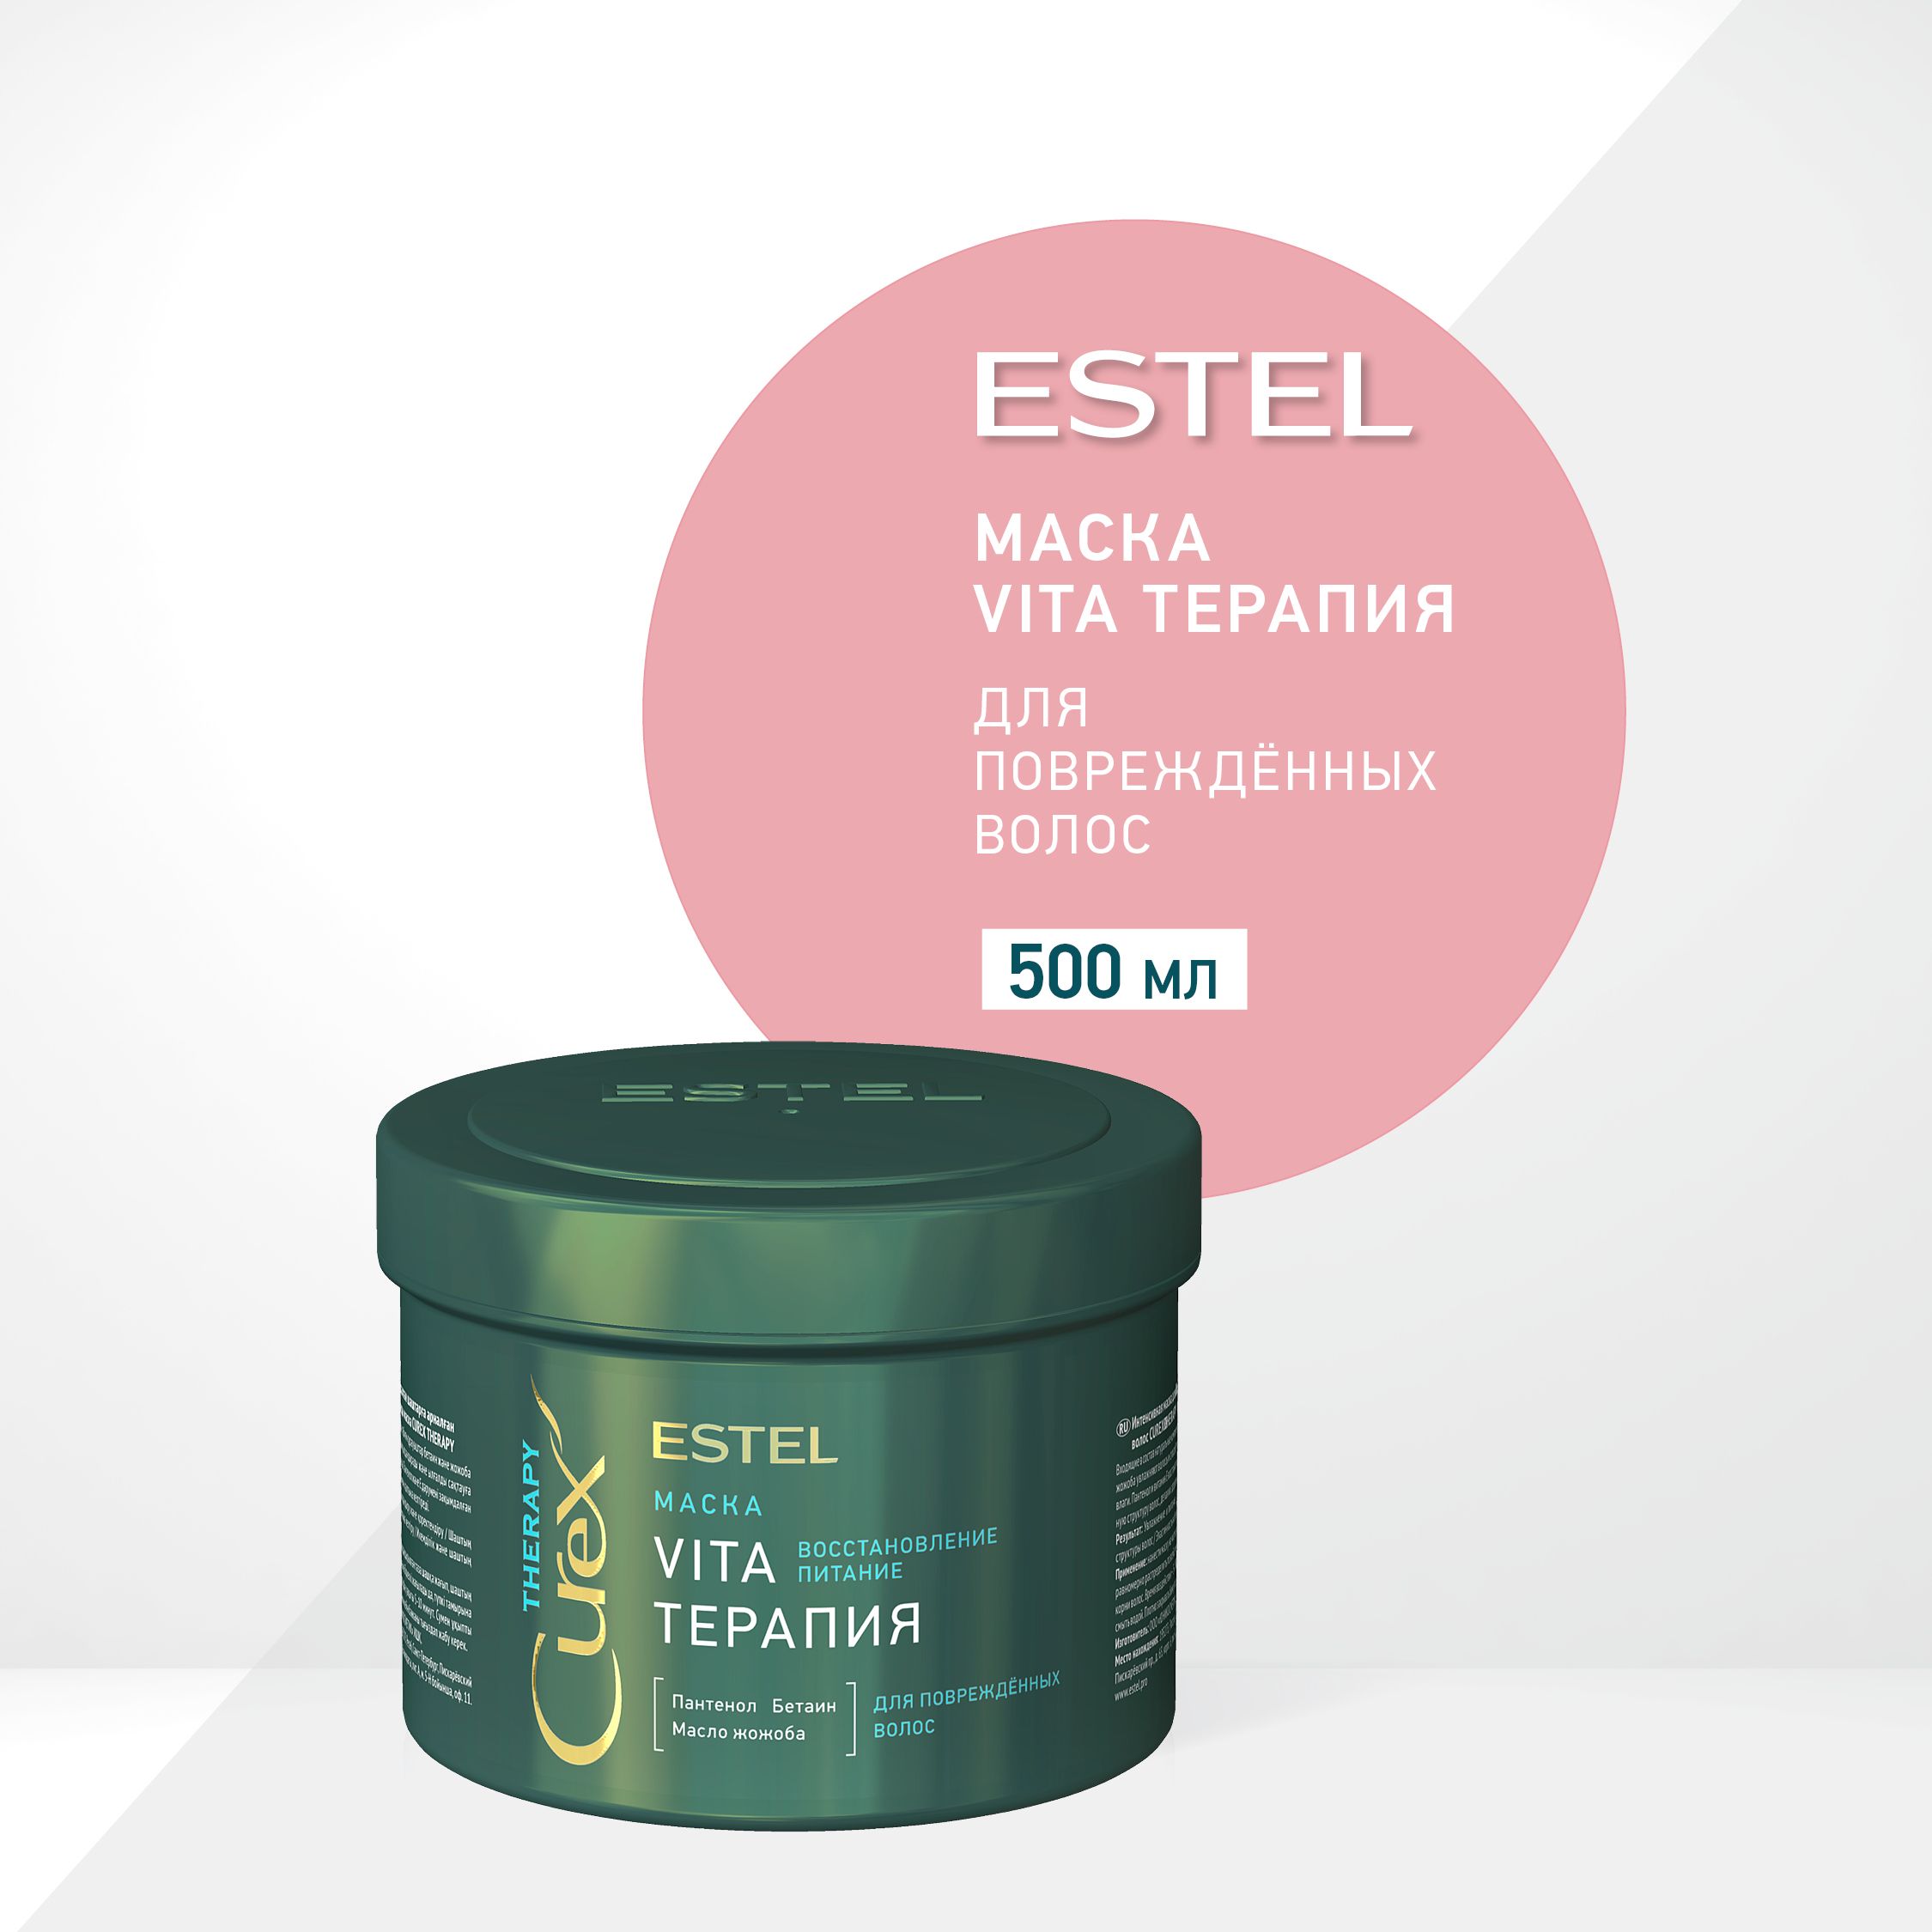 Маска для волос vita. Estel Curex маска Vita терапия Therapy 500. Маска Vita - терапия Estel Curex Therapy для повреждённых волос 500. Estel Curex Therapy интенсивная маска для поврежденных волос Vita-терапия.